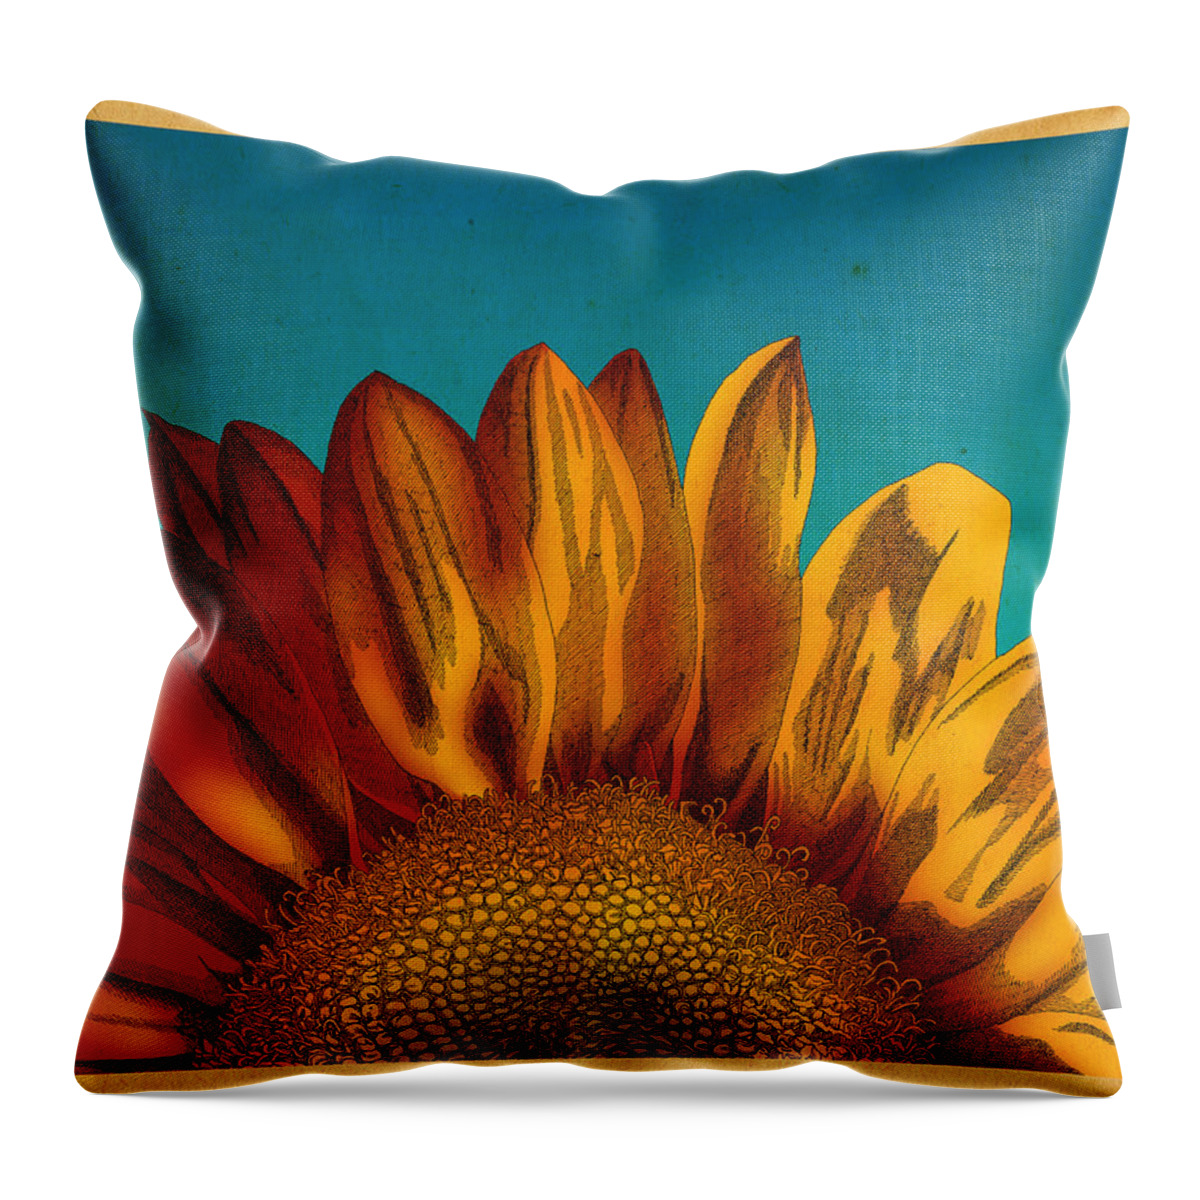 Sunflower Flower Throw Pillow featuring the drawing Sunflower by Meg Shearer